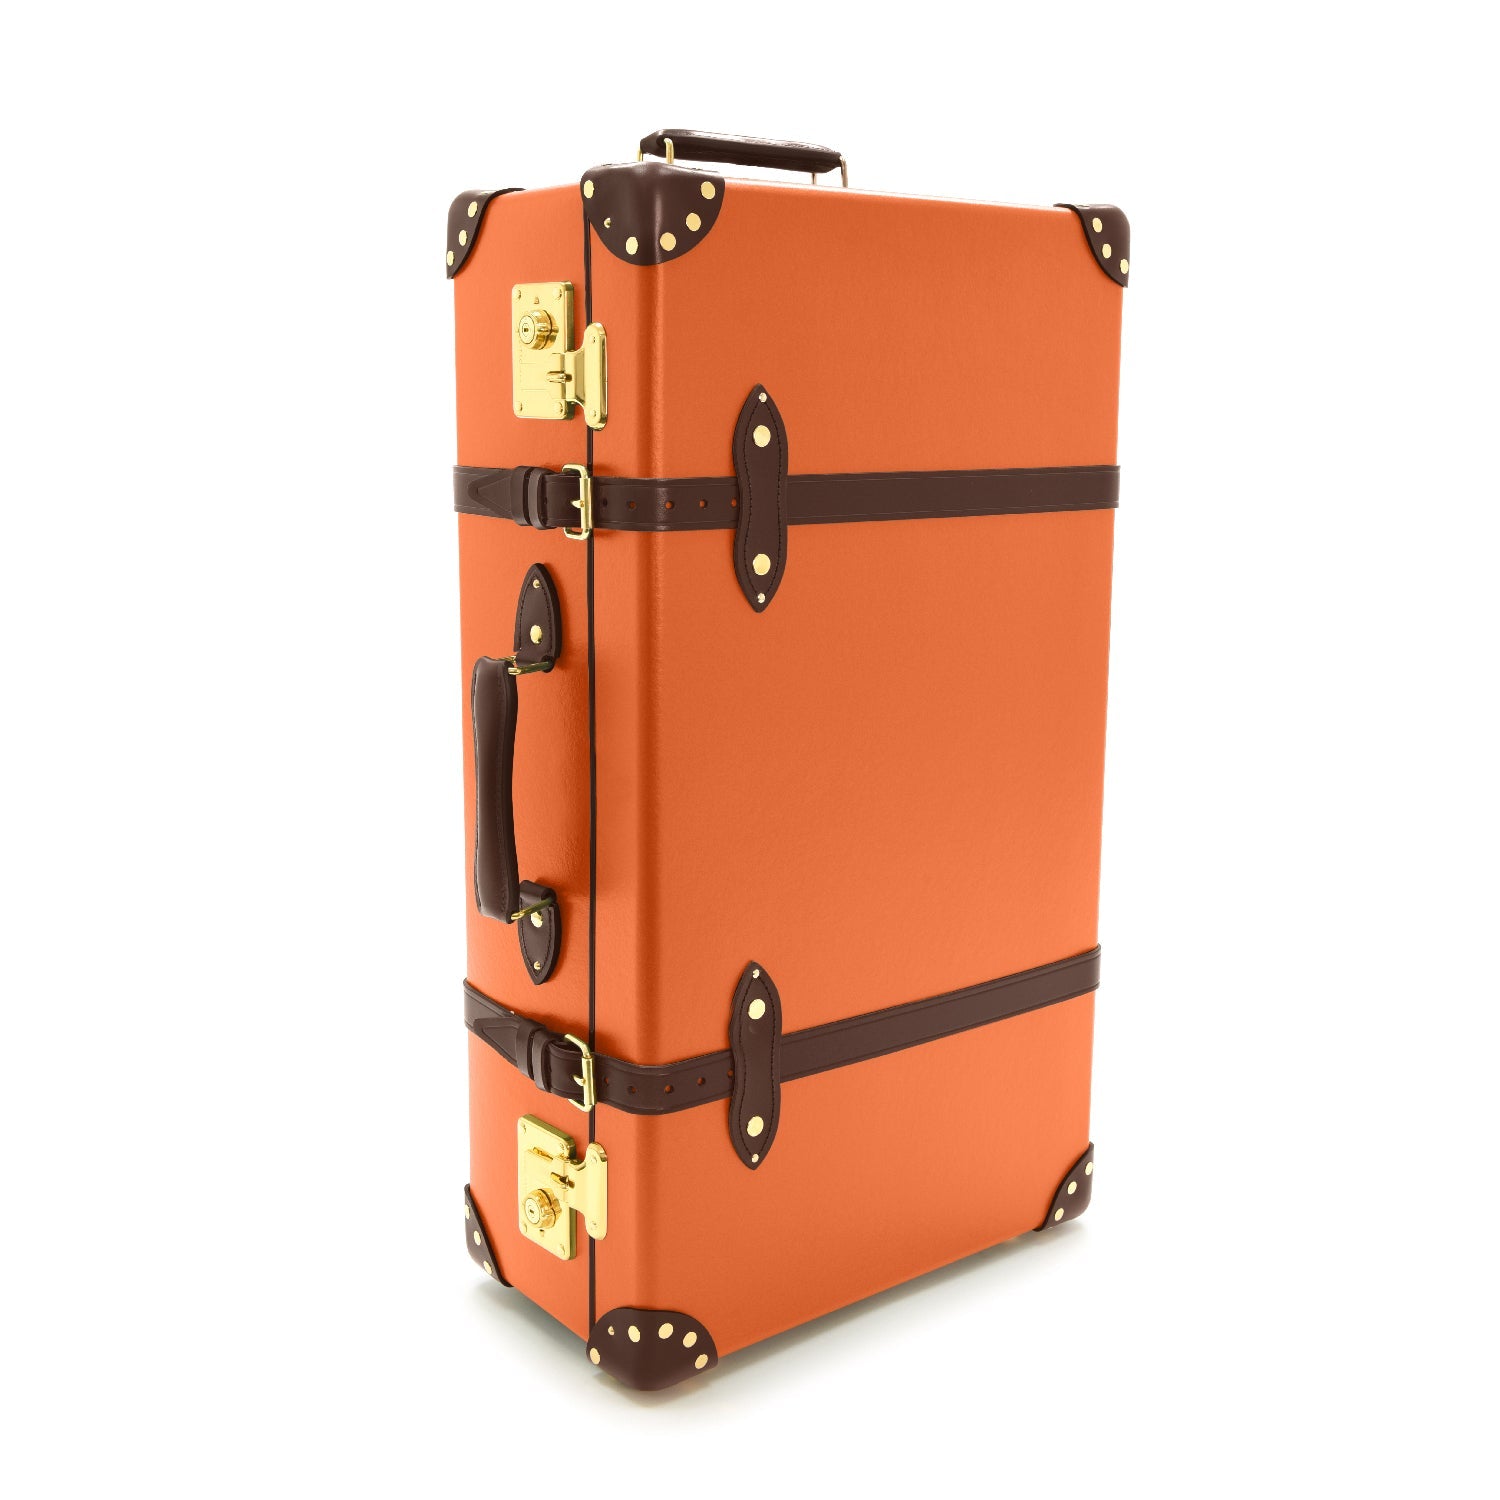 センテナリー · ラージ スーツケース | オレンジ/ブラウン